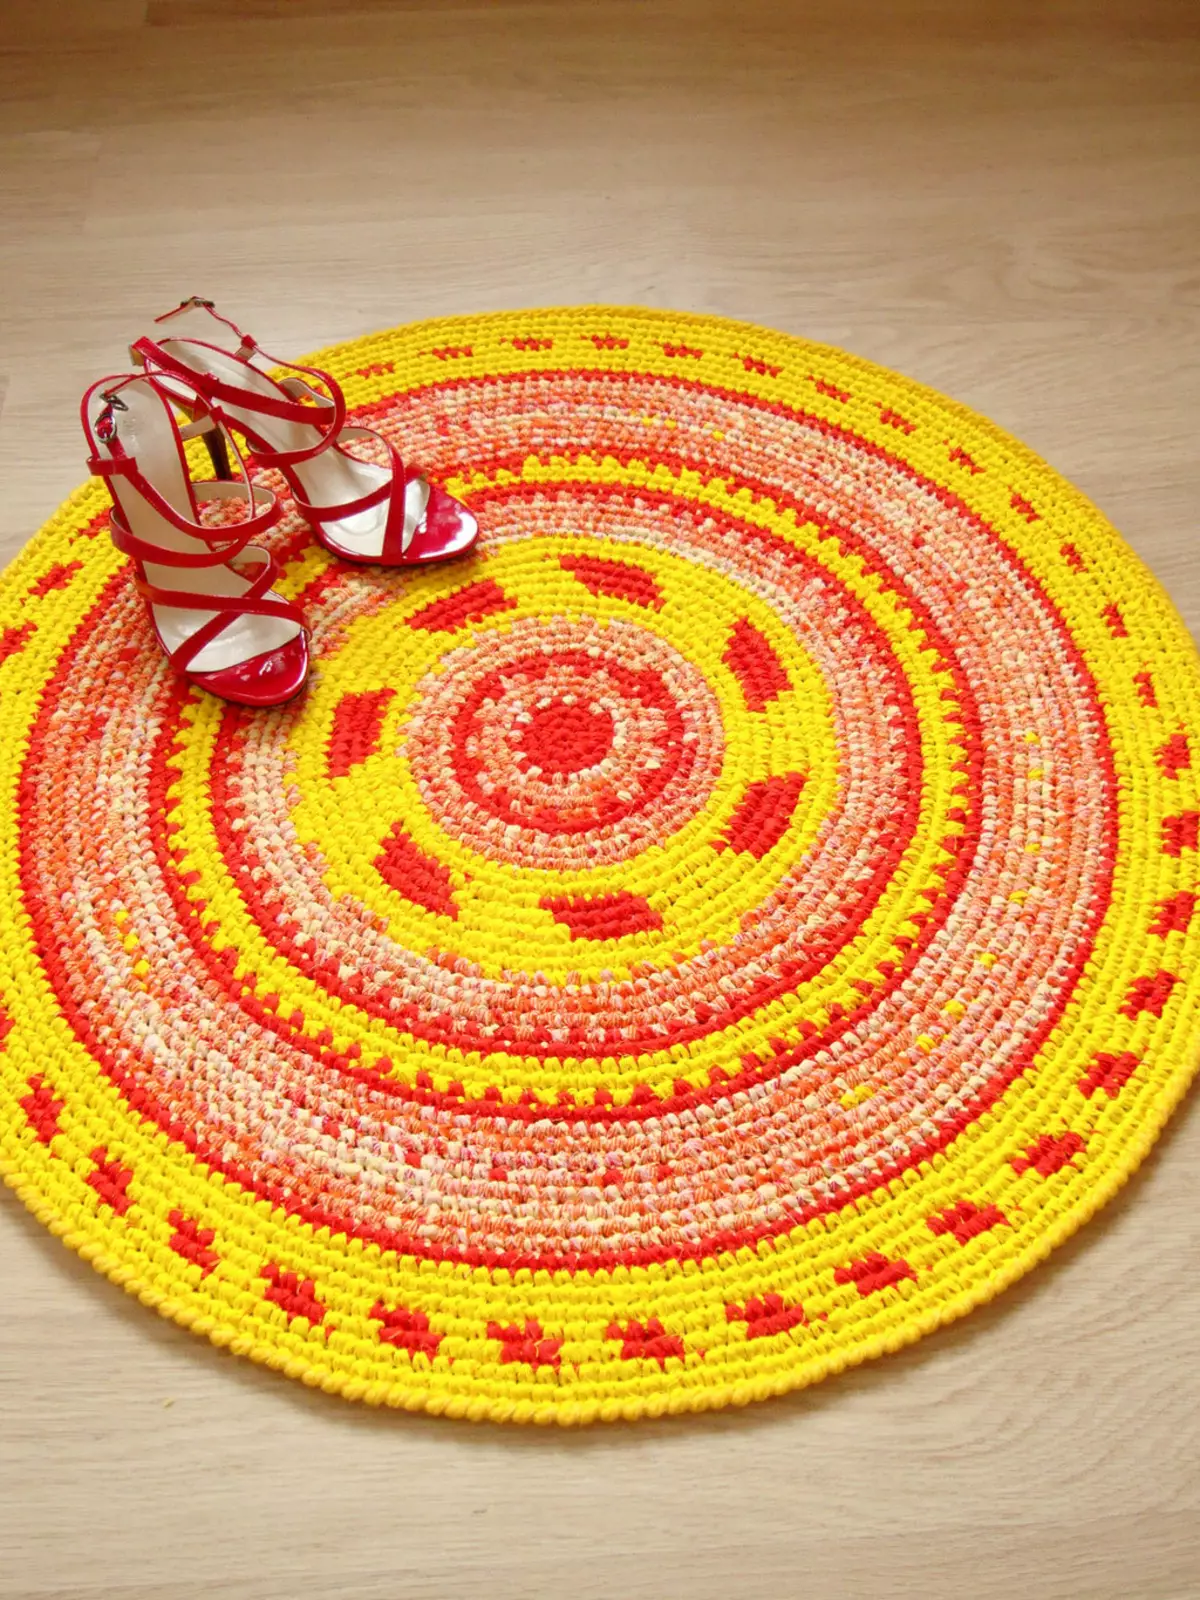 Karpet crochet rajutan saka patchworks: cara dasi nganggo tangan karpet sampeyan dhewe ing lantai roso patchwork kanthi gaya patchwork, bunder lan rustic 8165_8